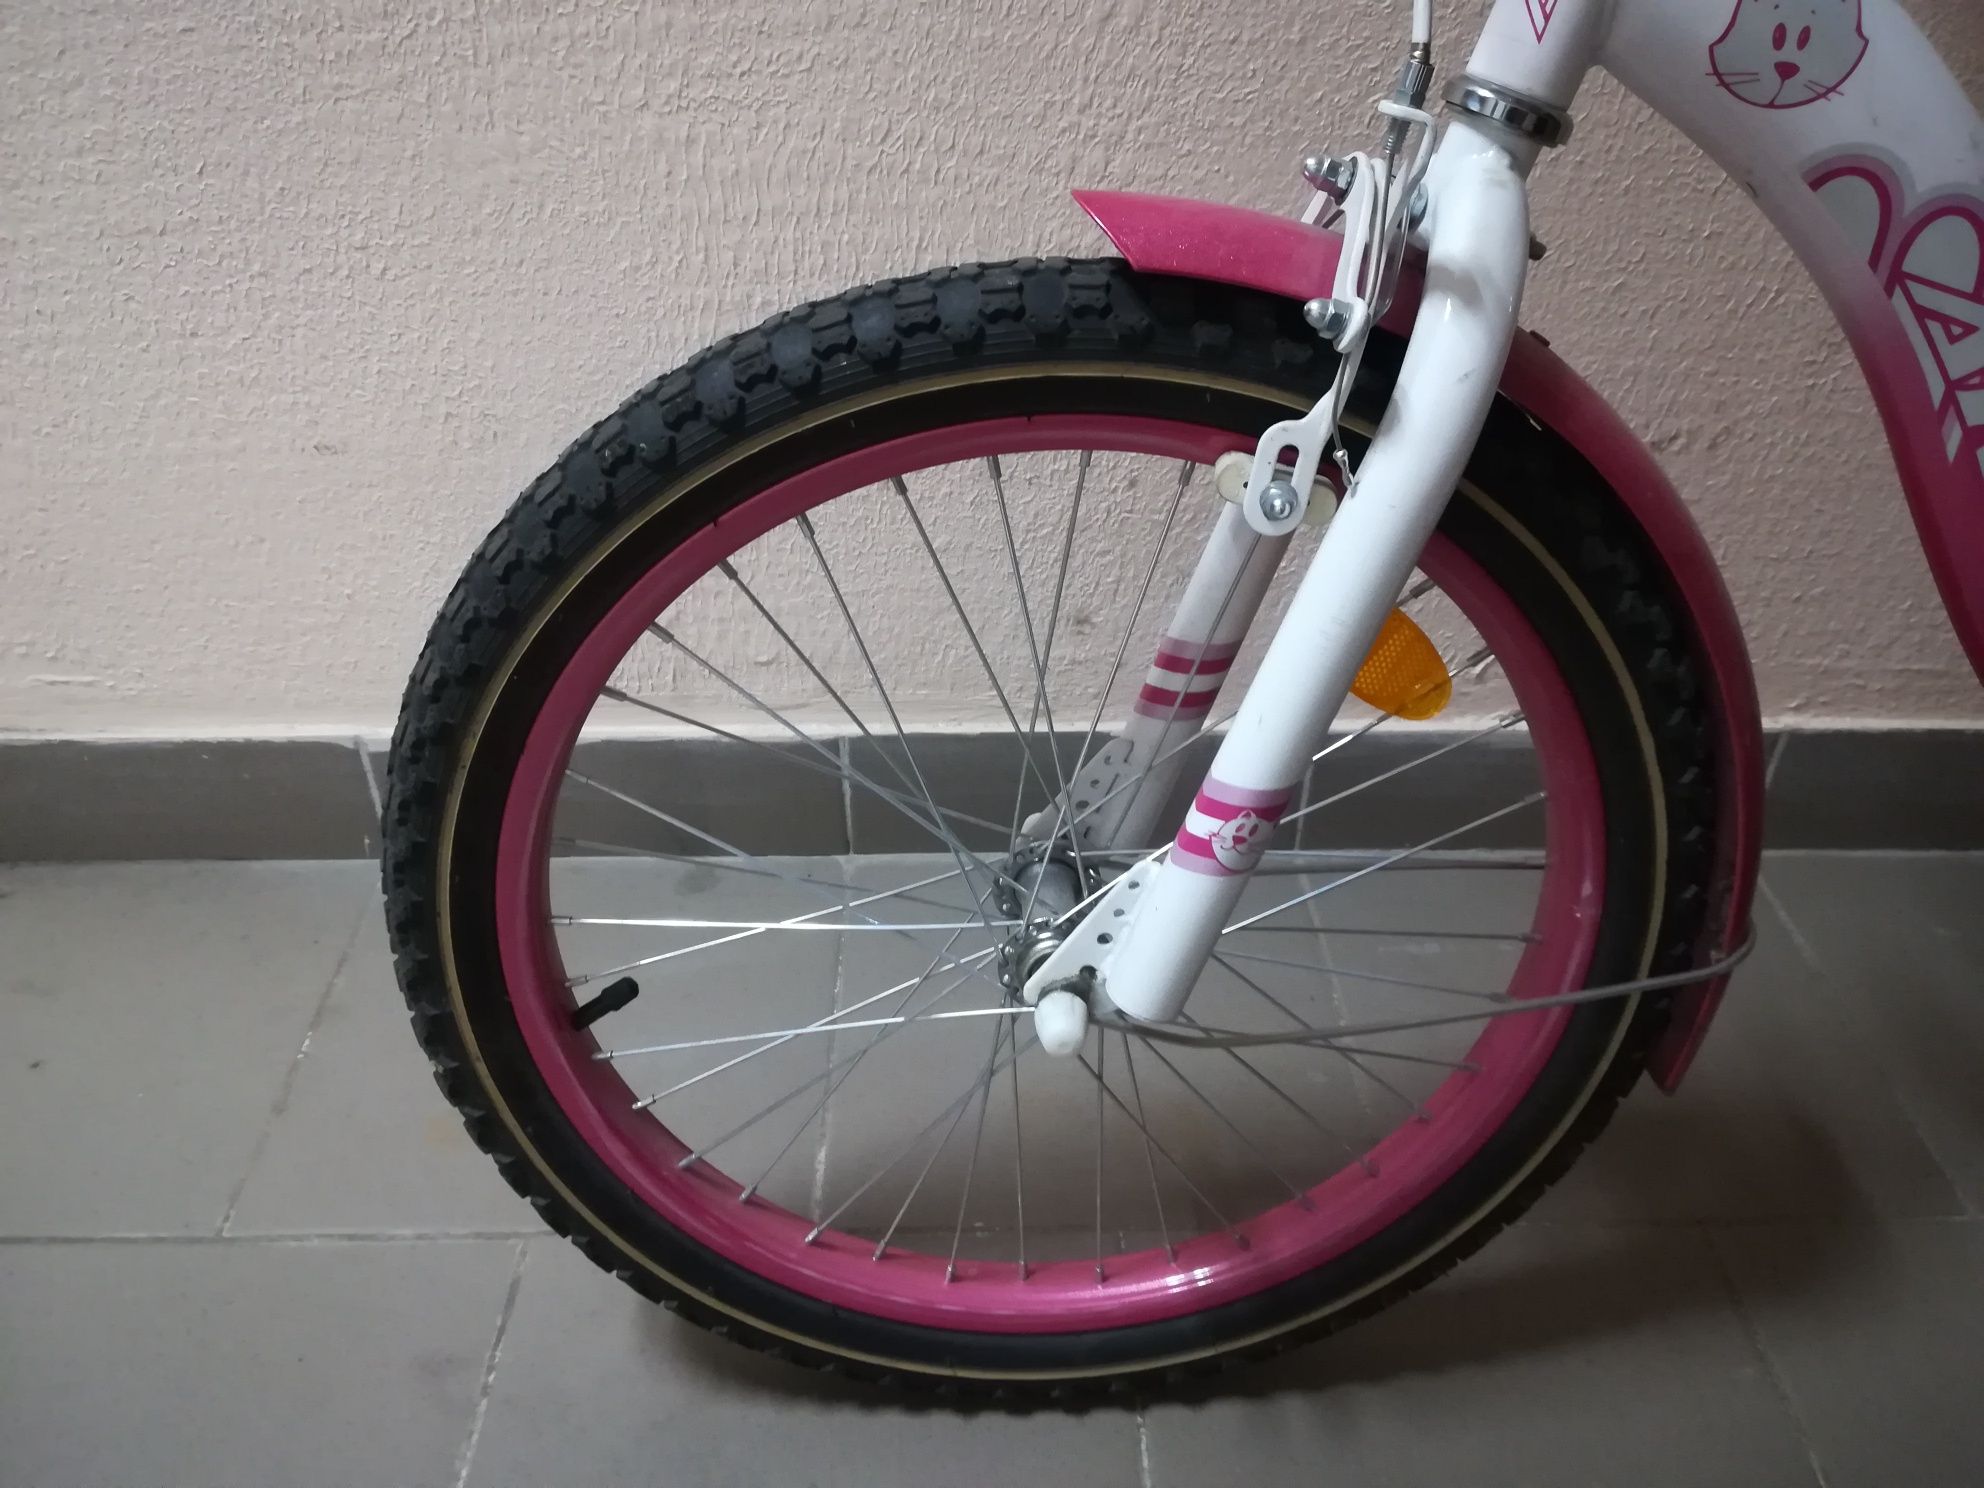 Велосипед Ardis для девочки.